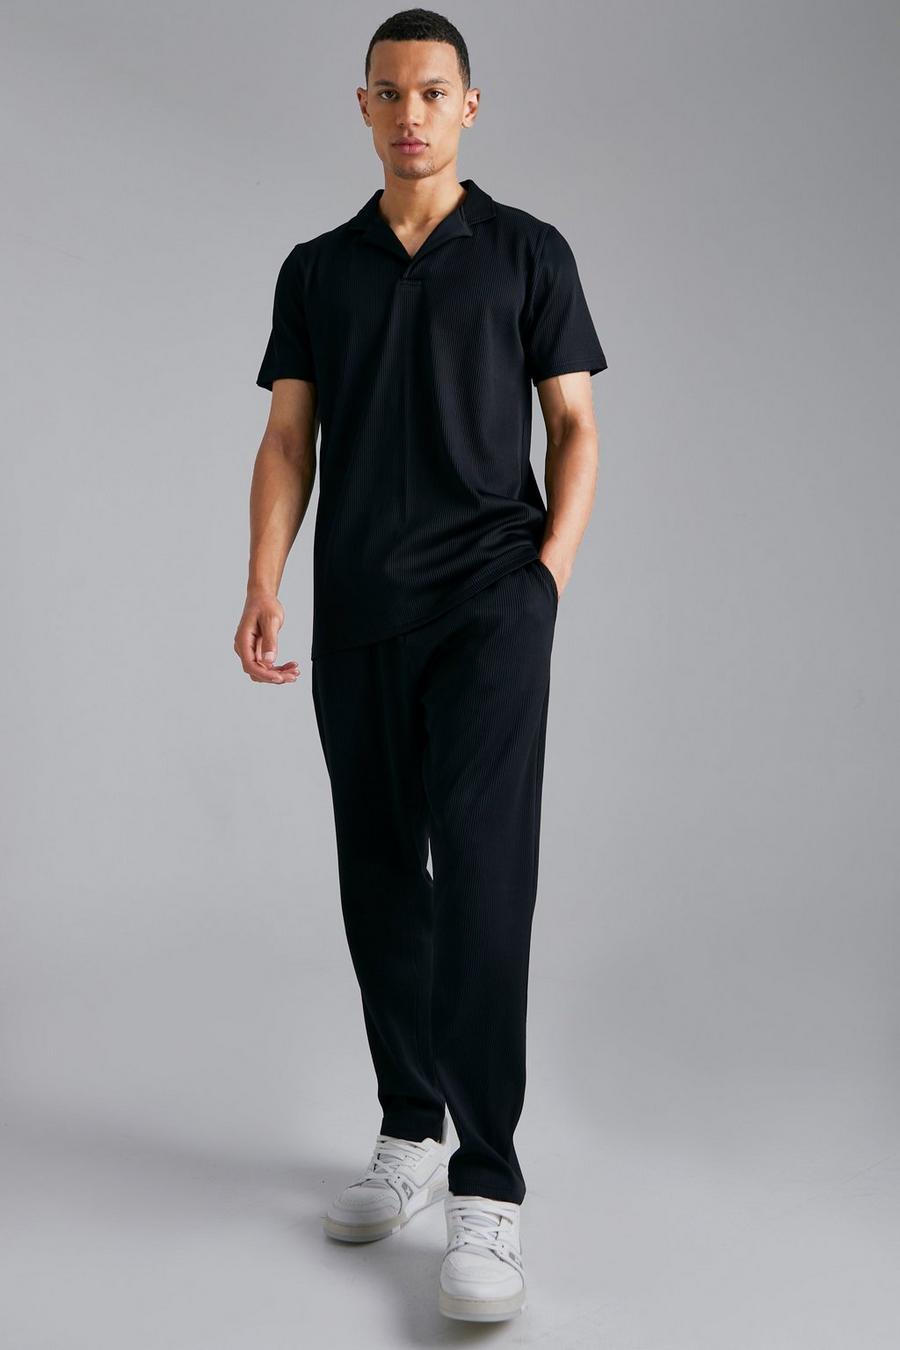 שחור negro סט מכנסי טרנינג בגזרת קרסול צרה וחולצת פולו בגזרה צרה עם קפלים, לגברים גבוהים